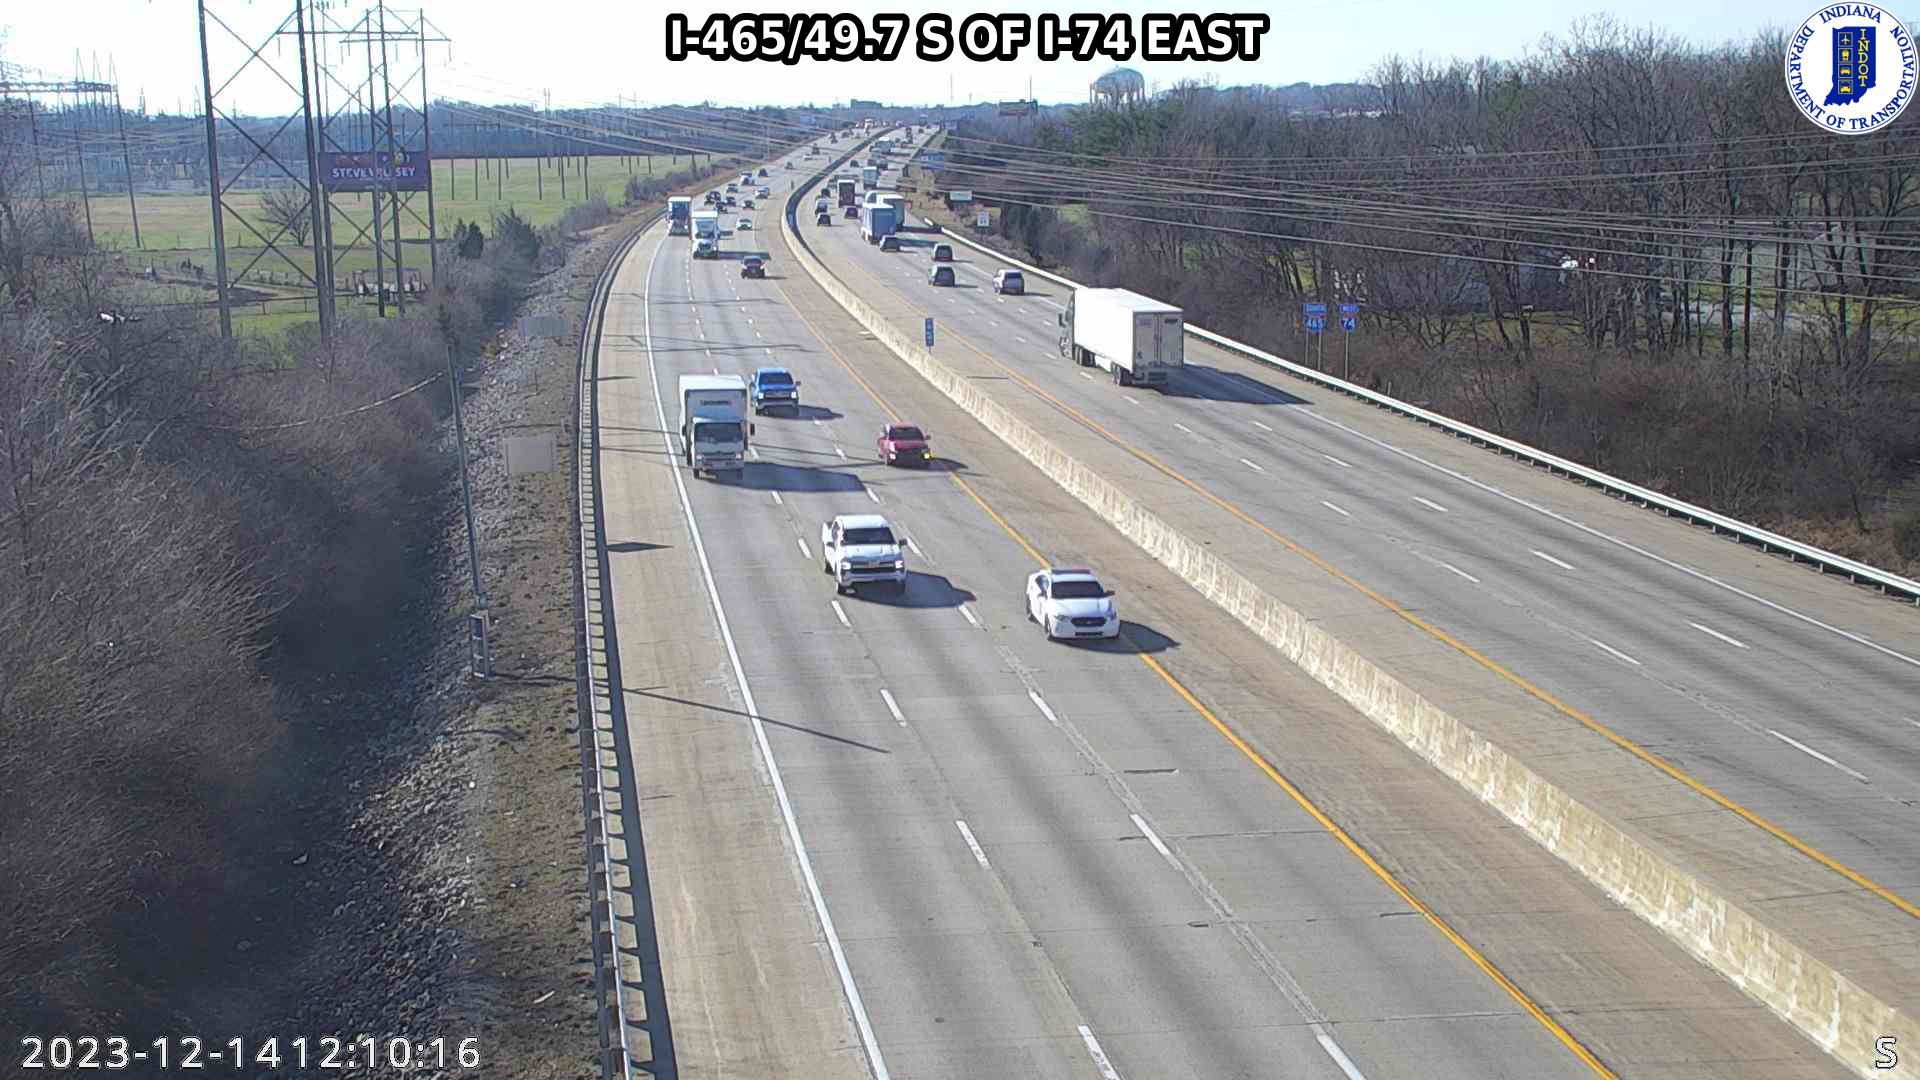 Indianapolis › East: I-465: I-465/49.7 S OF I-74 EAST Traffic Camera